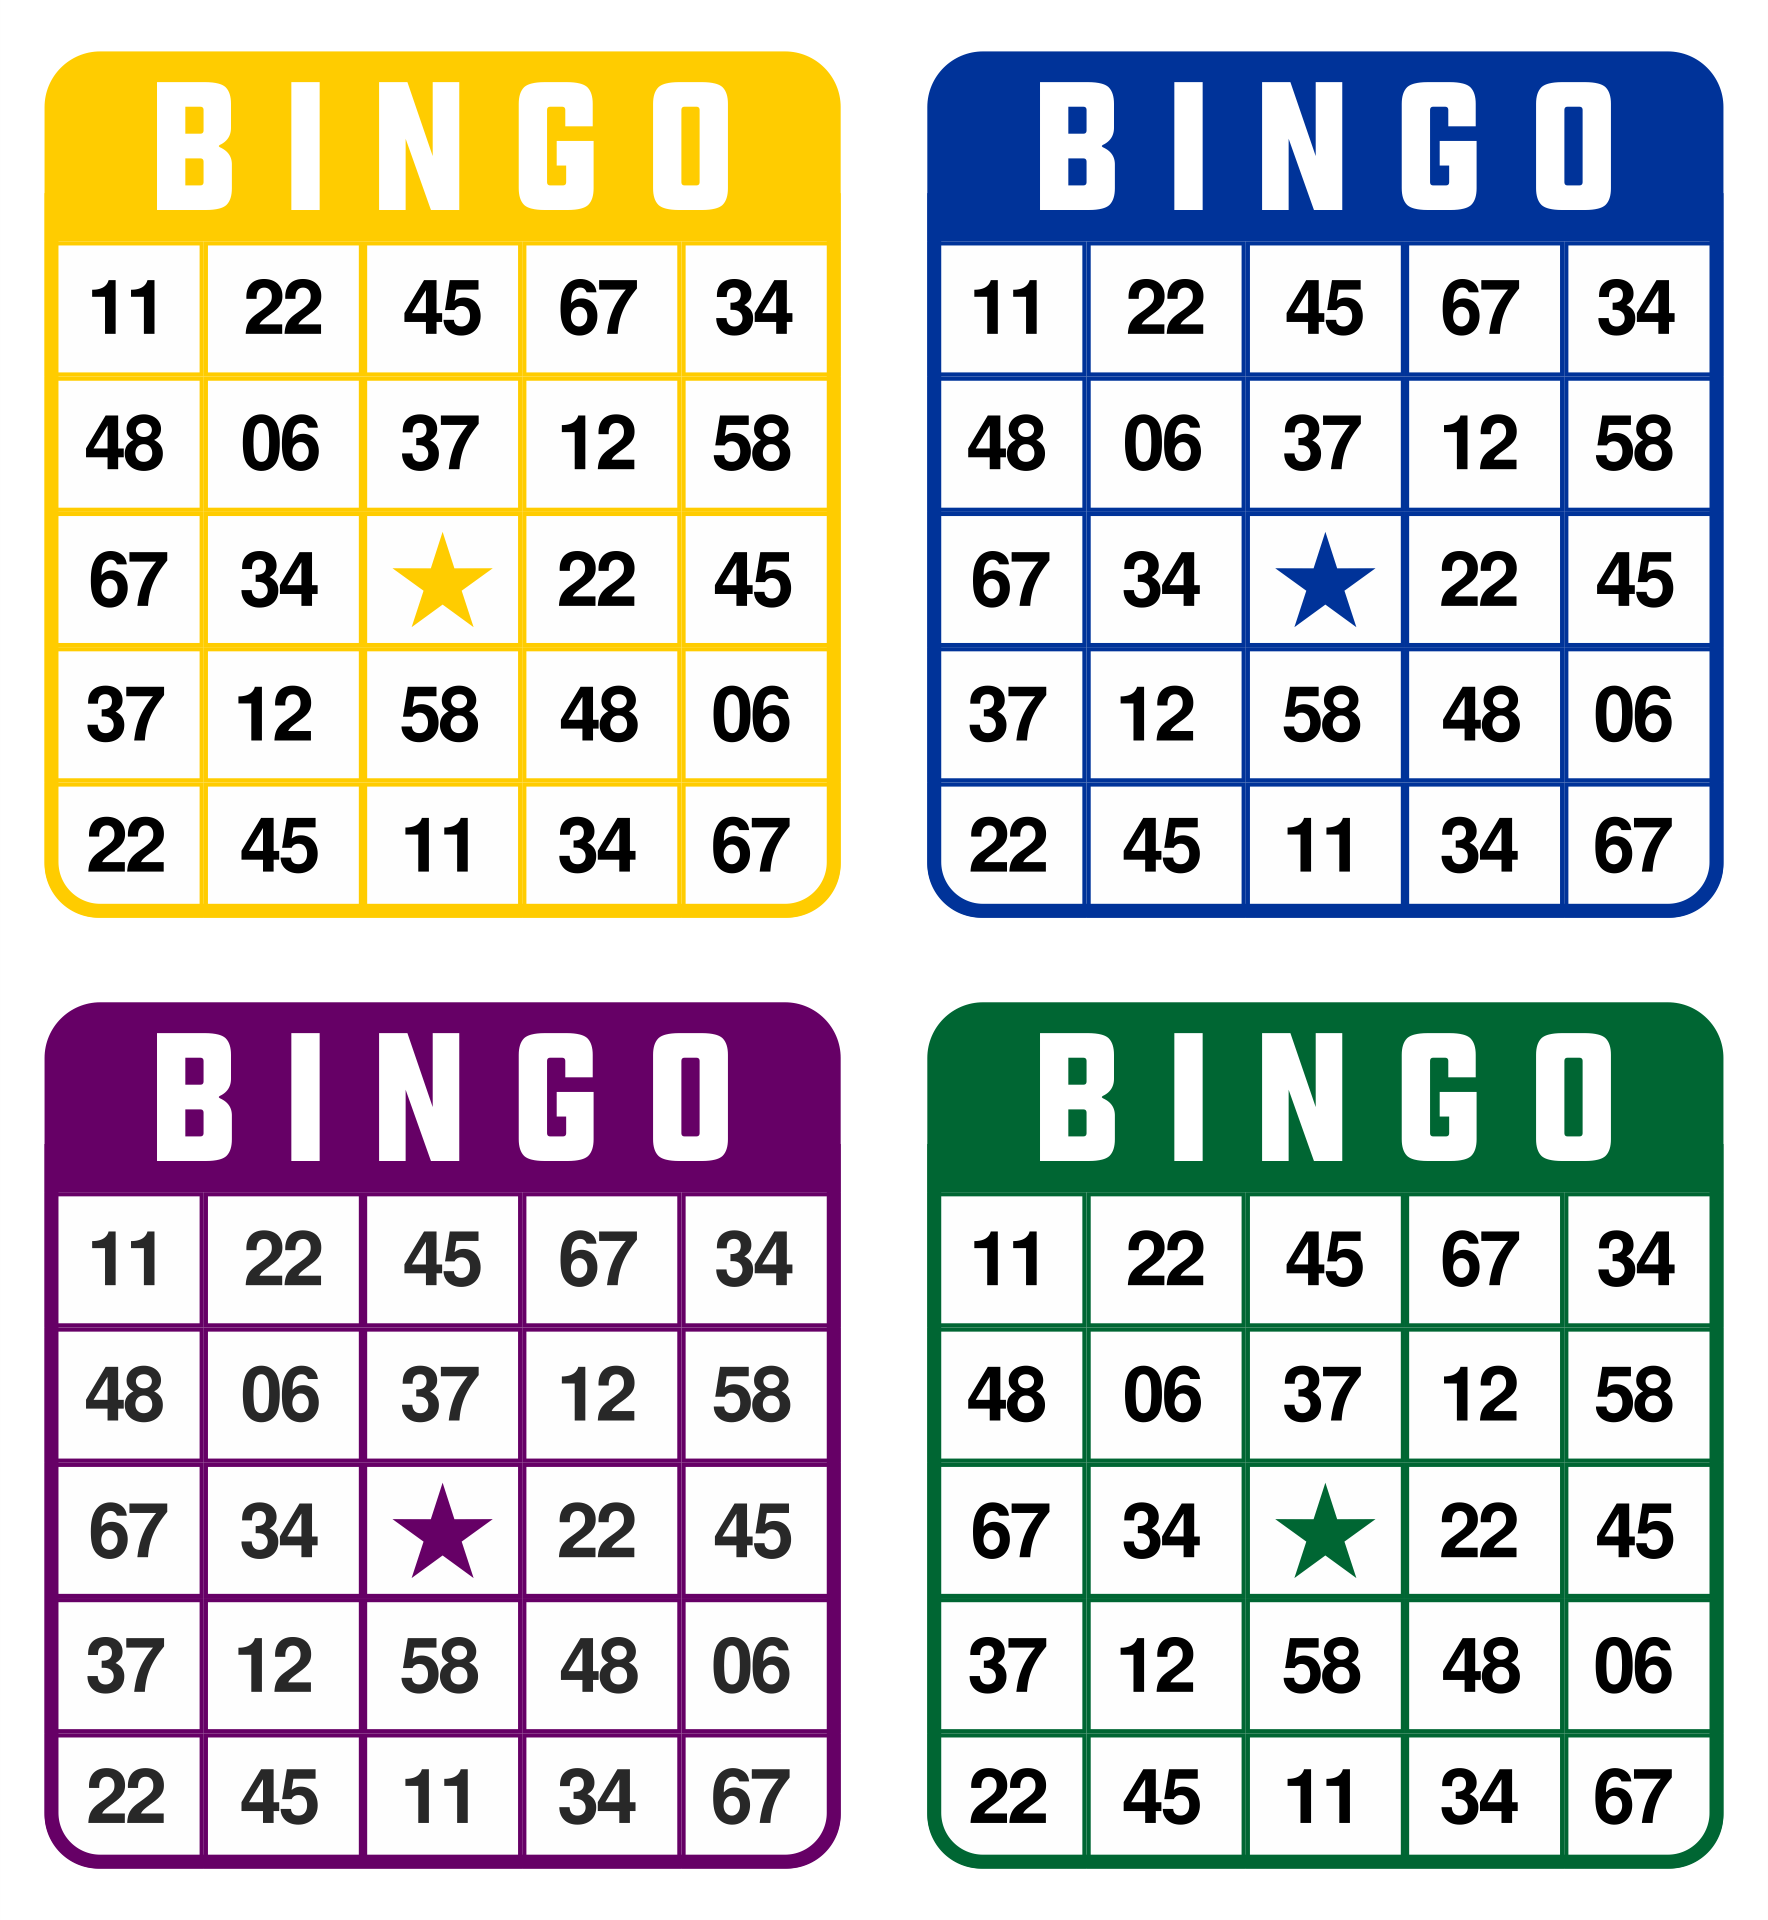 bingo caller bingo number generator 1 100